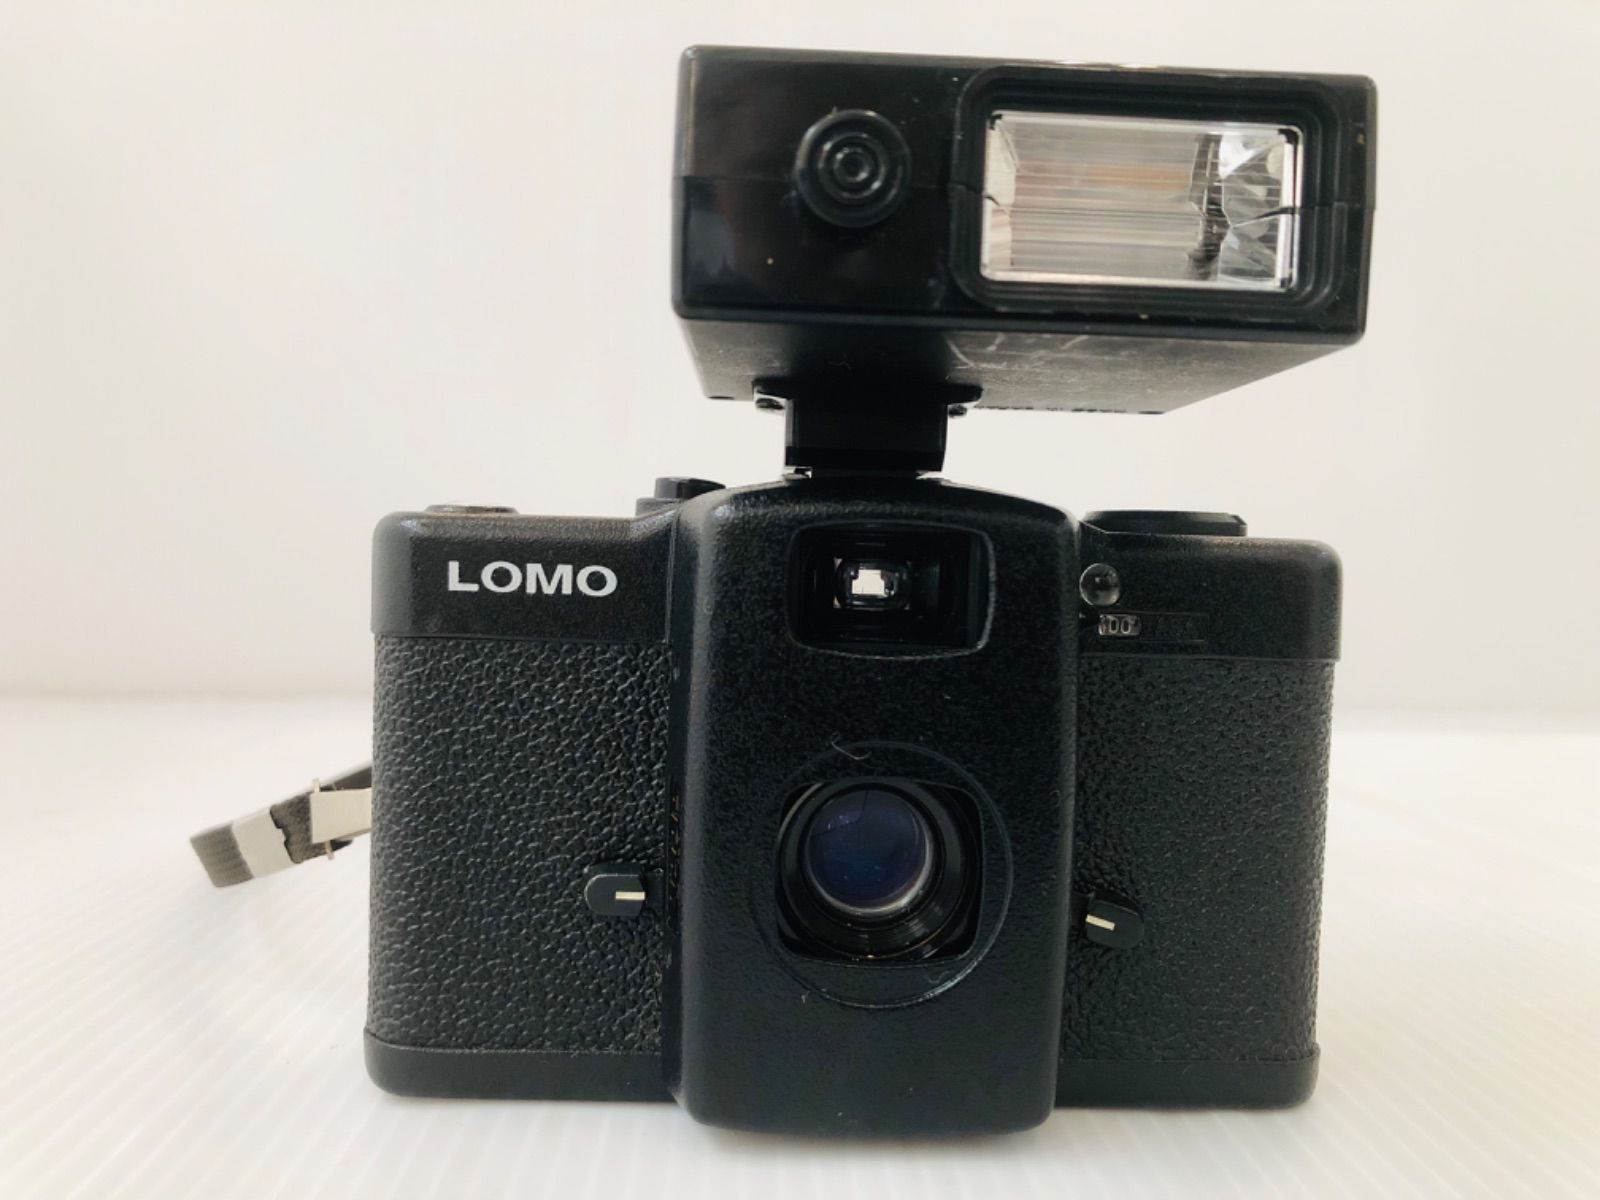 ストロボ付き】トイカメラ LOMO LC-A【MADE IN RUSSIA】 - メルカリ